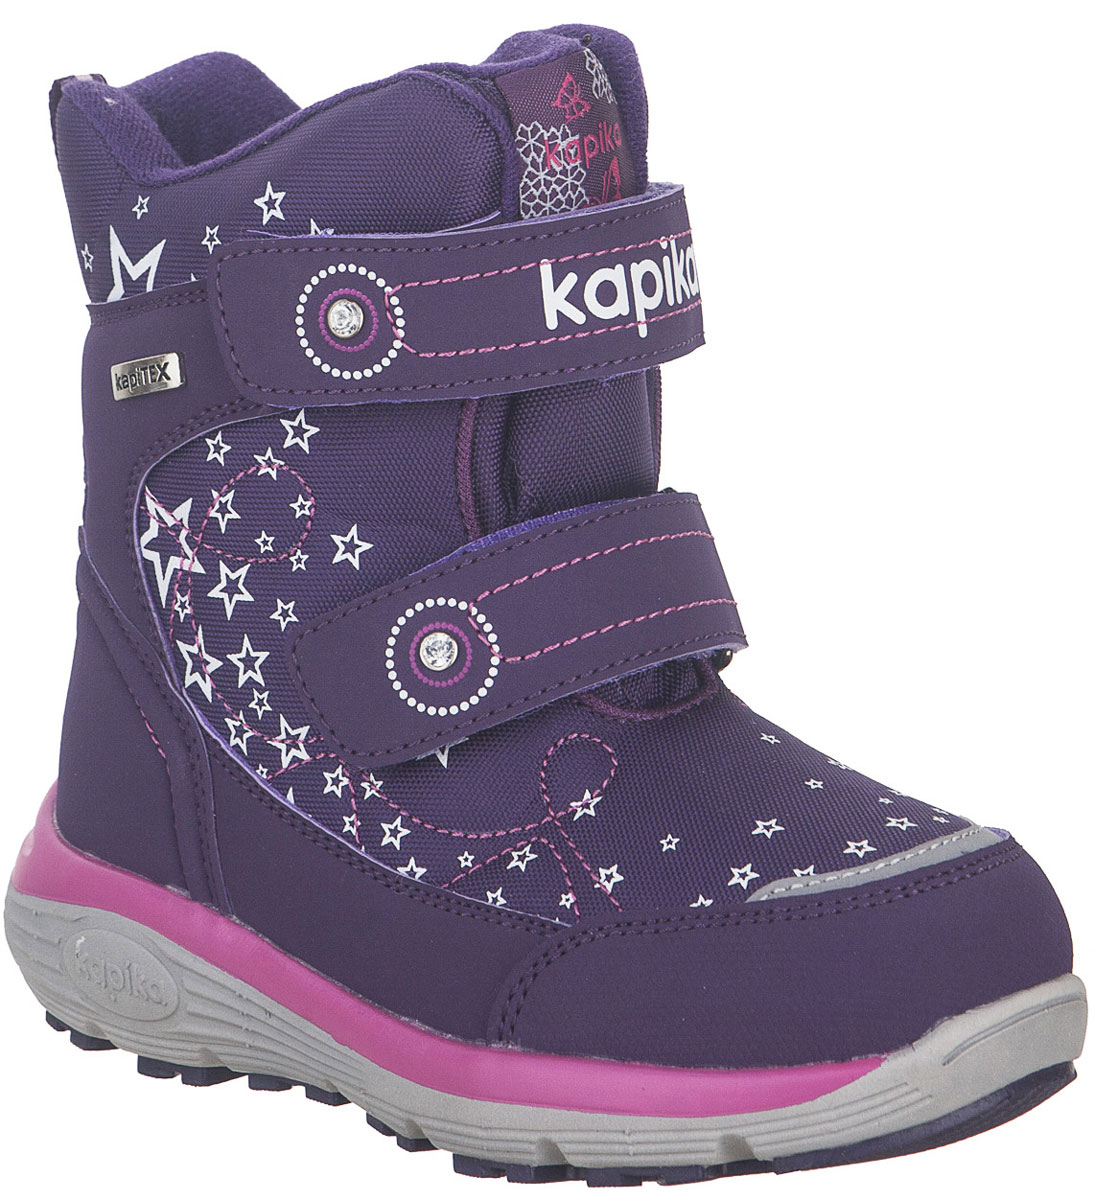 Ботинки для девочки Kapika, цвет: фиолетовый. 42255-2. Размер 32